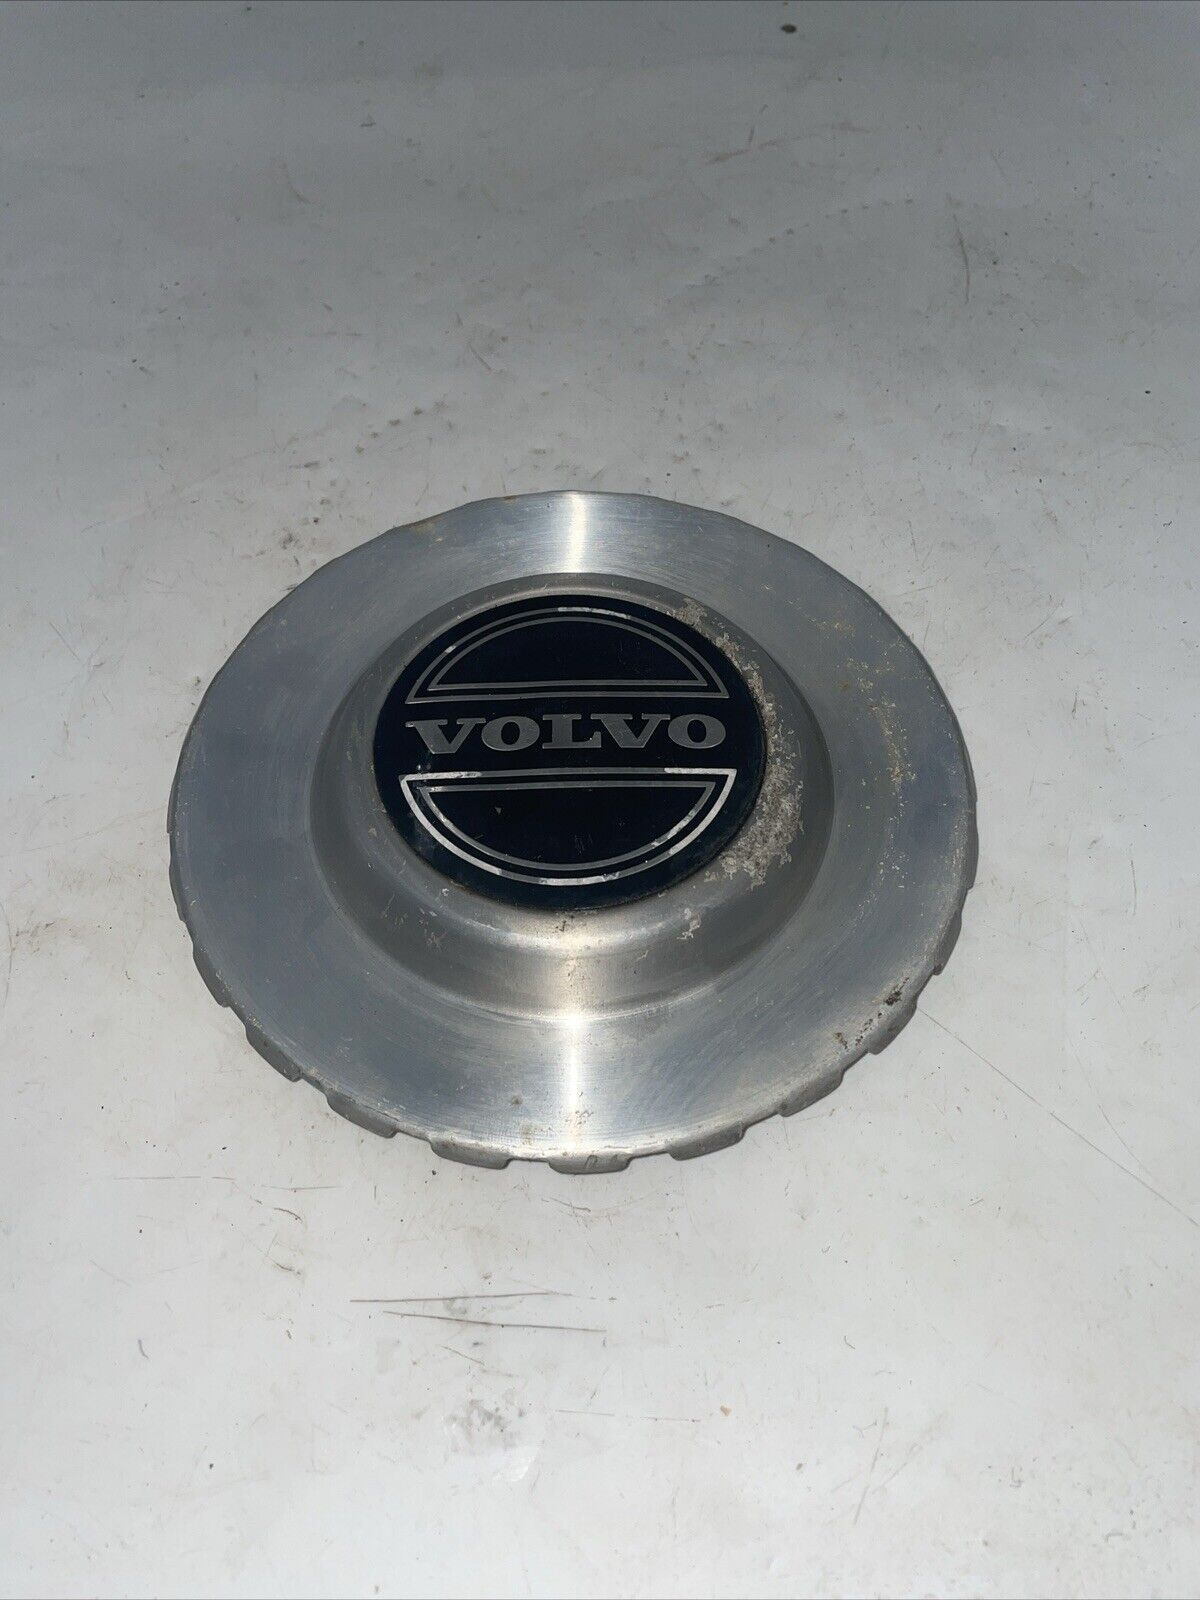 Volvo OEM 1980-1985 240 DL Chrome Center Cap Wheel Hub Cover